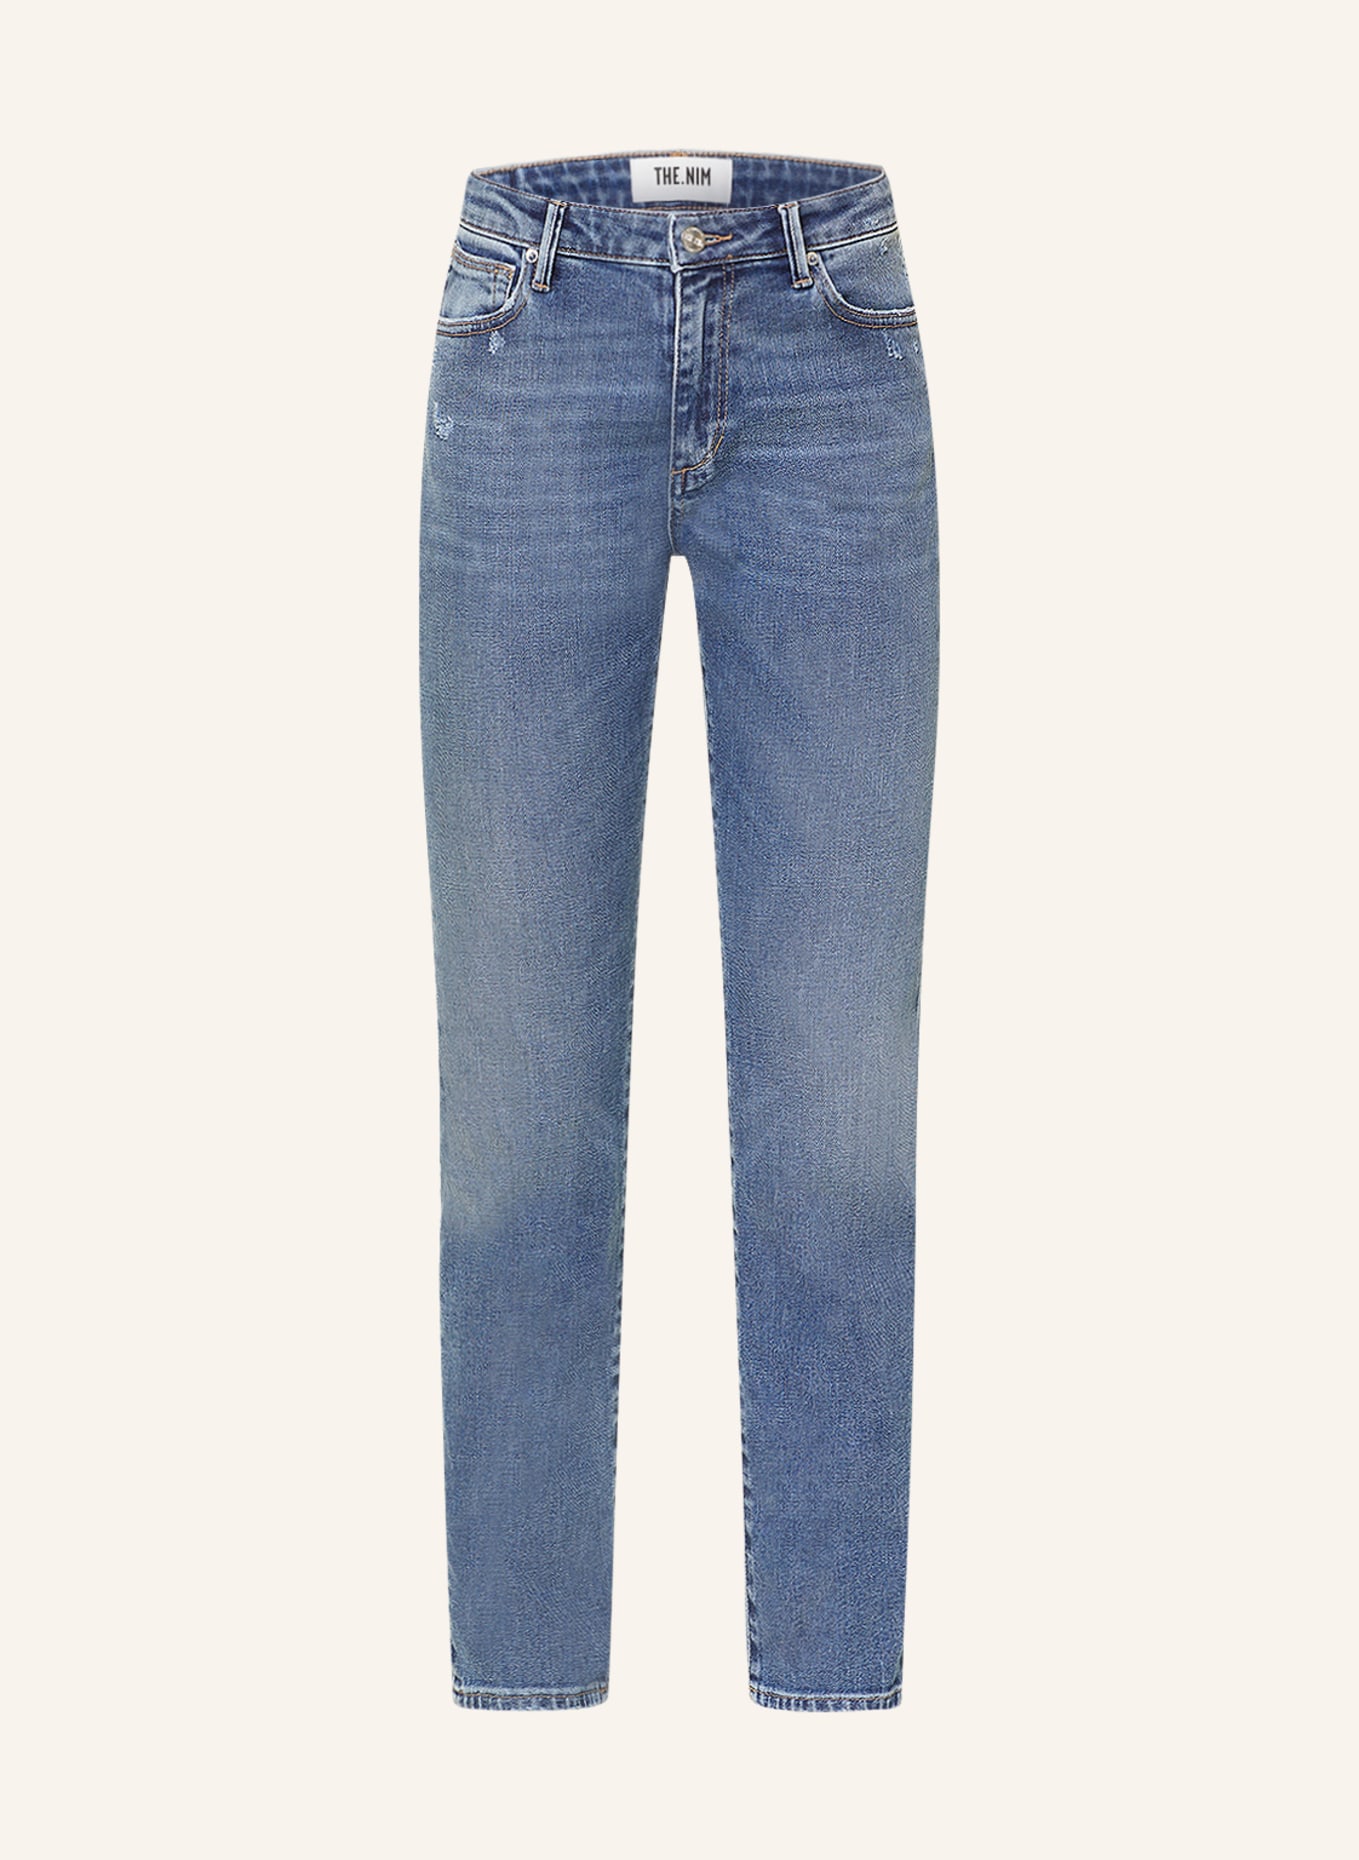 THE.NIM STANDARD Jeans BONNIE, Farbe: W796-MDV MID BLUE (Bild 1)